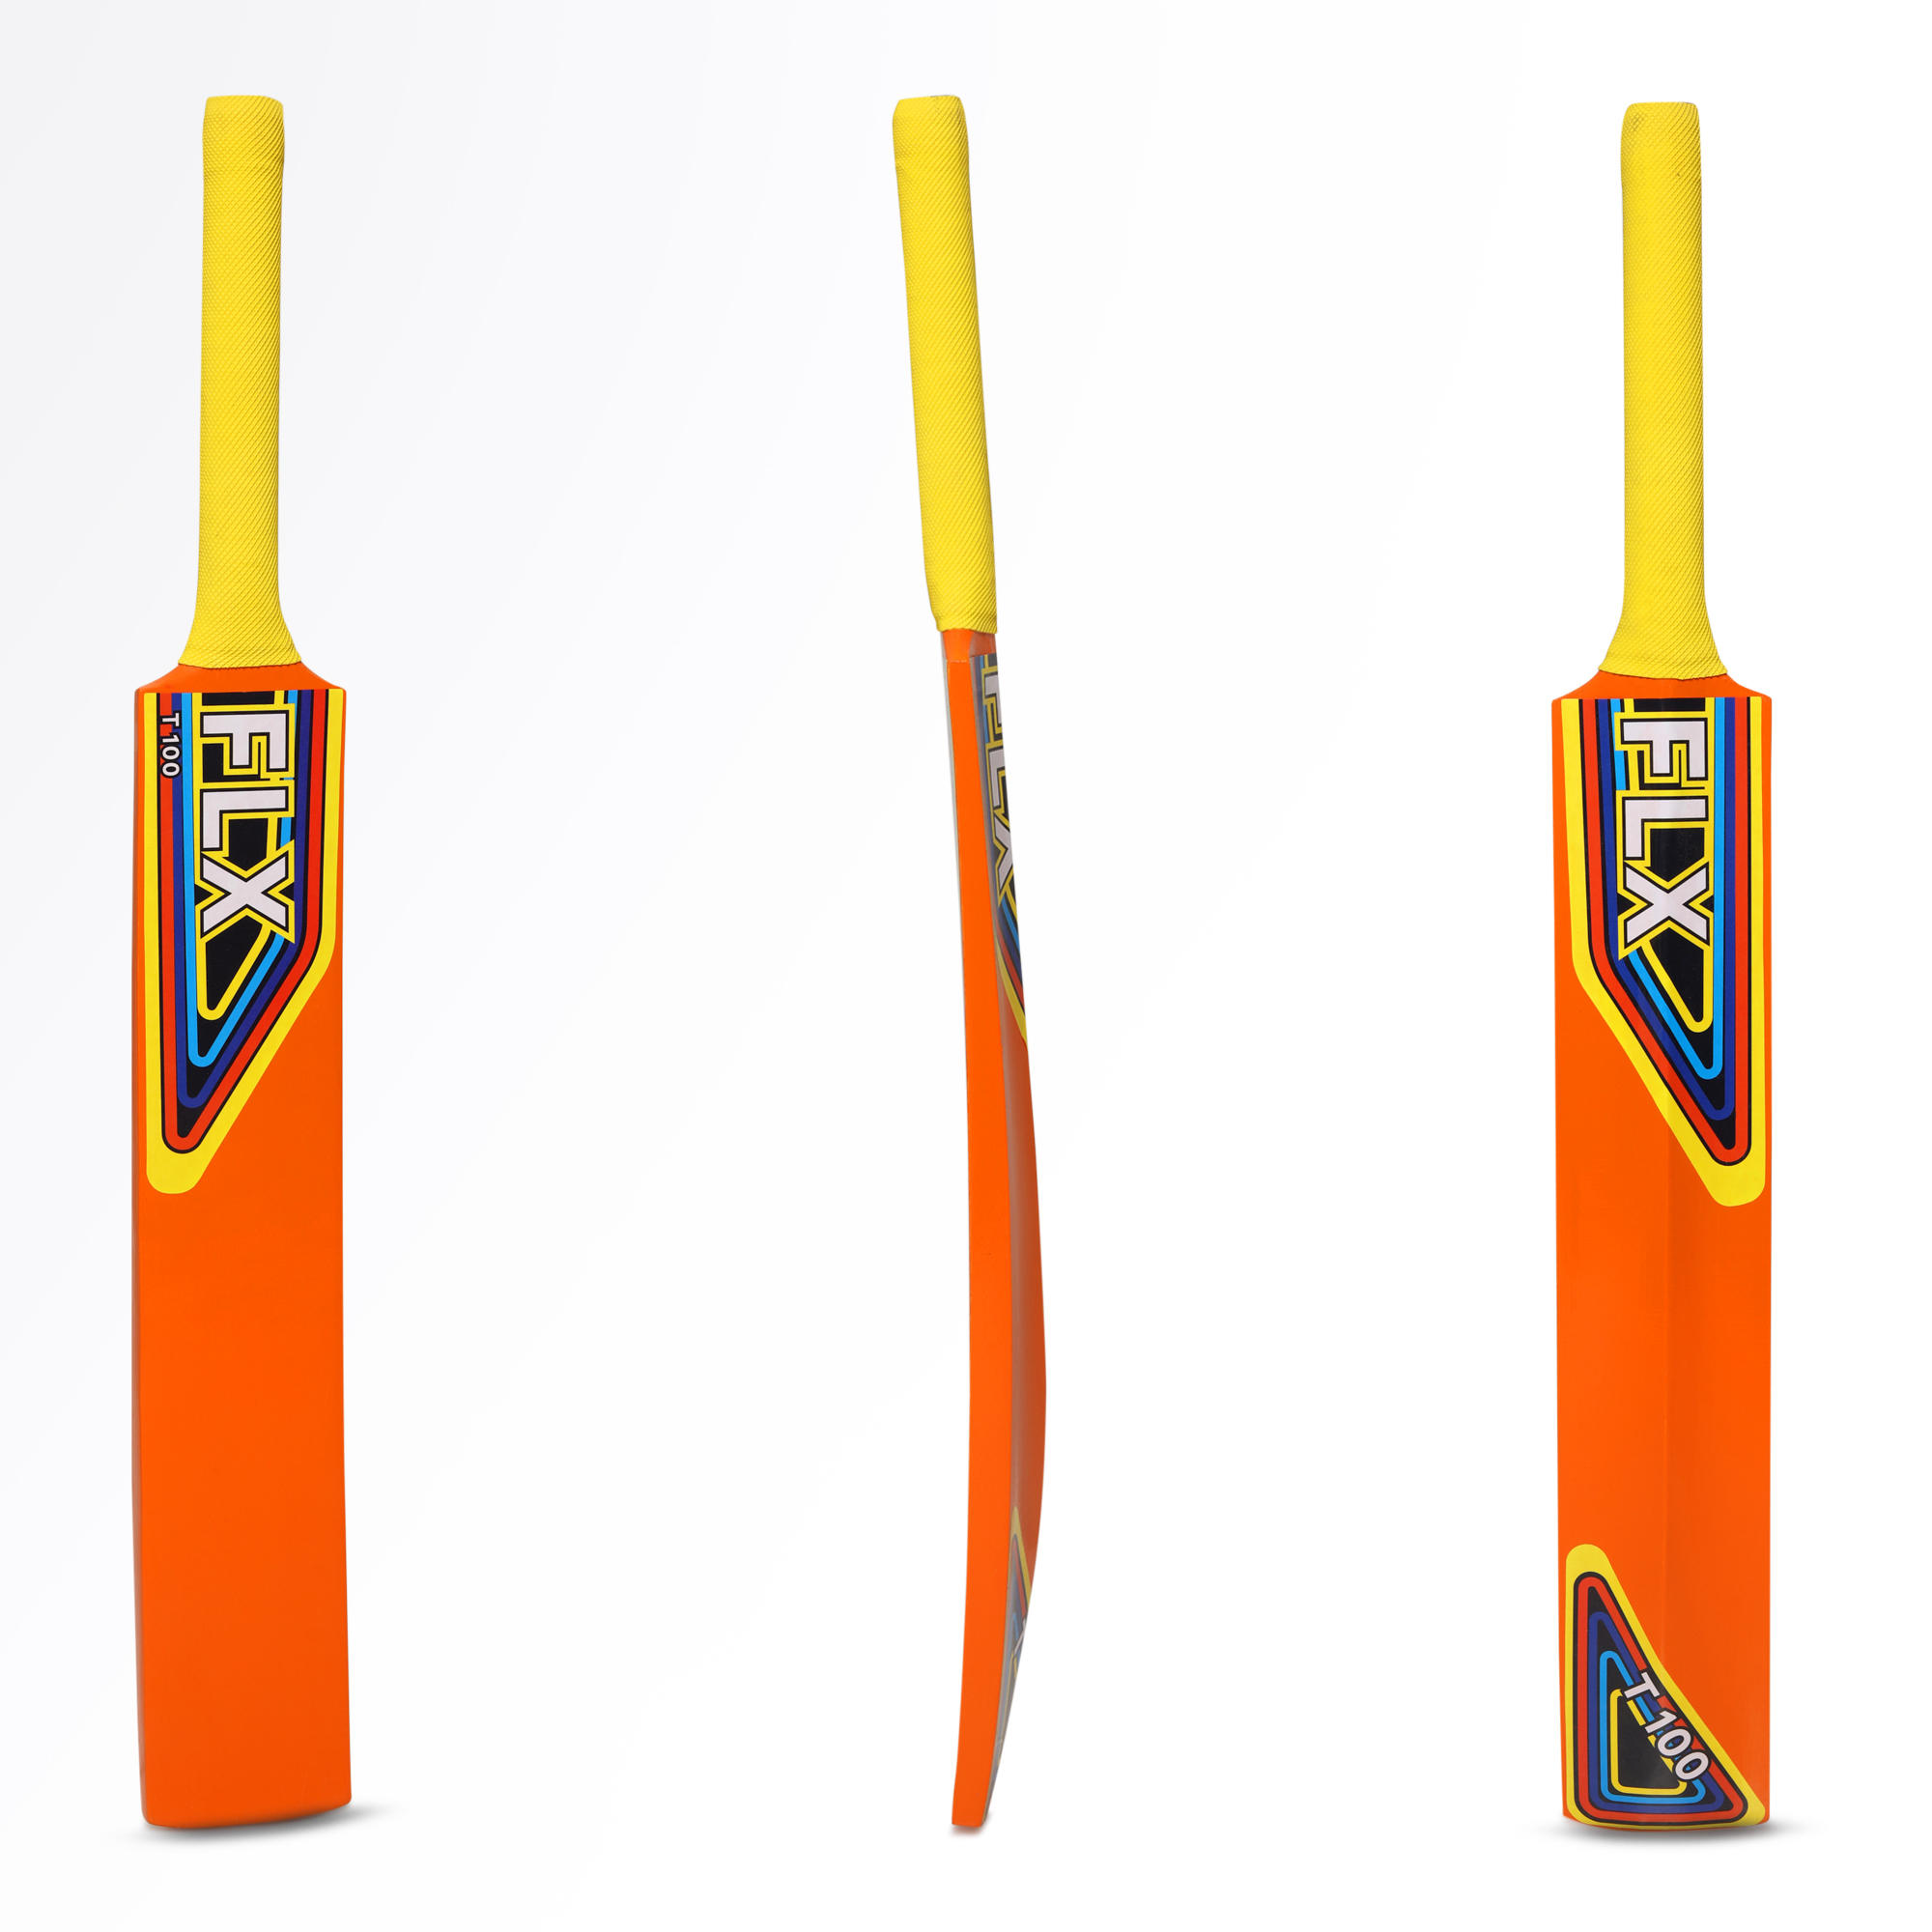 flx cricket bat decathlon